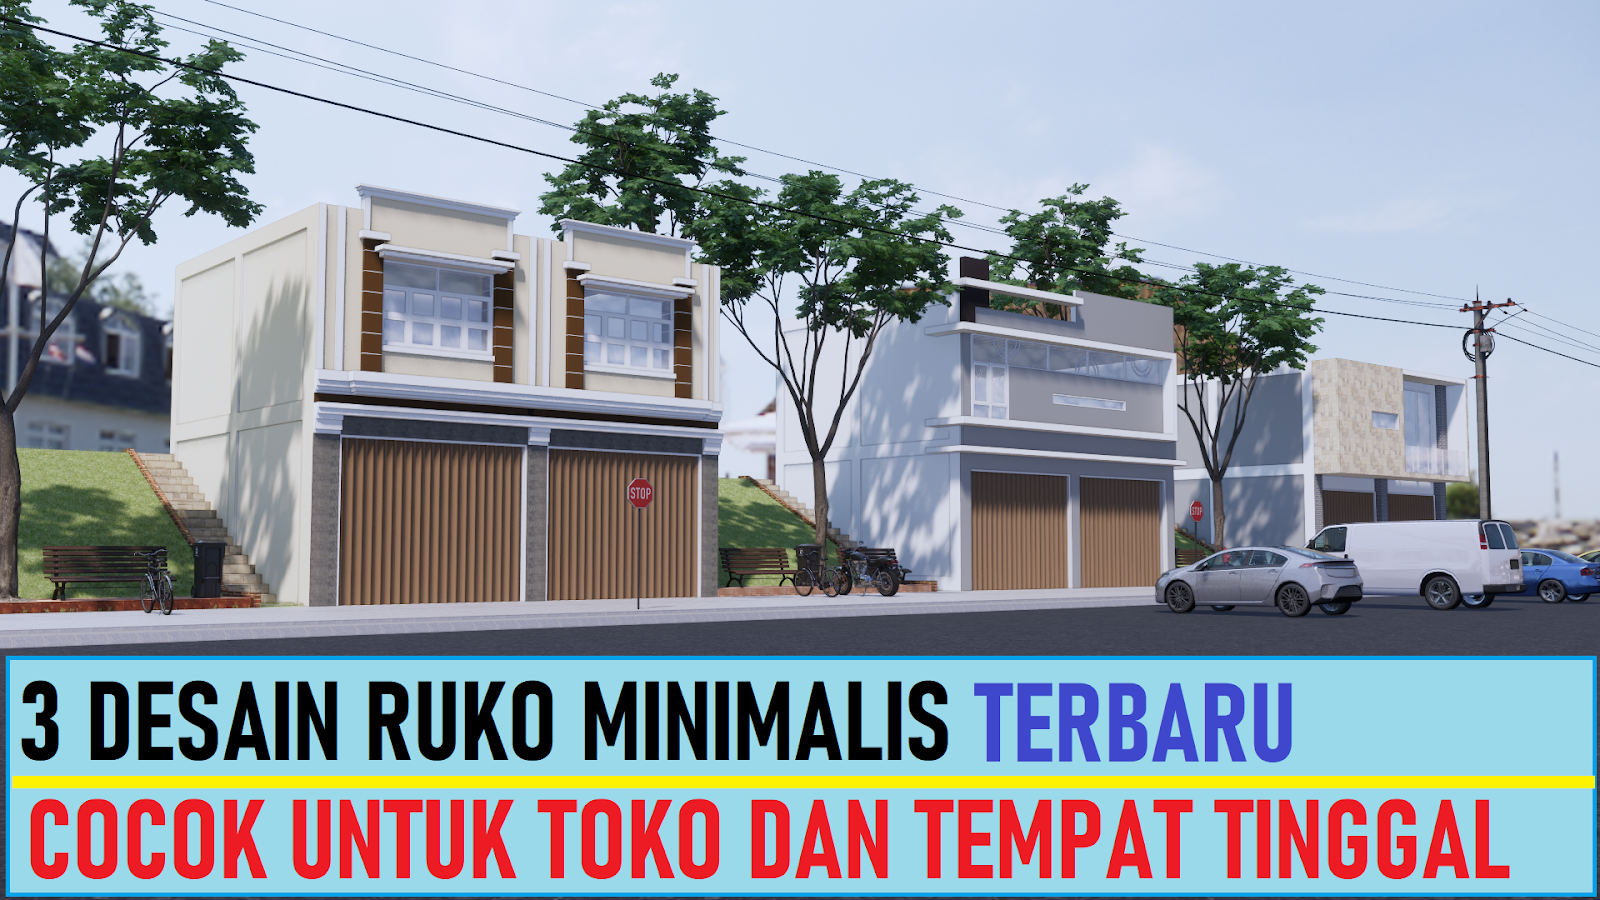 3 Desain Ruko Minimalis Untuk Toko dan Tempat Tinggal  DESAIN RUMAH